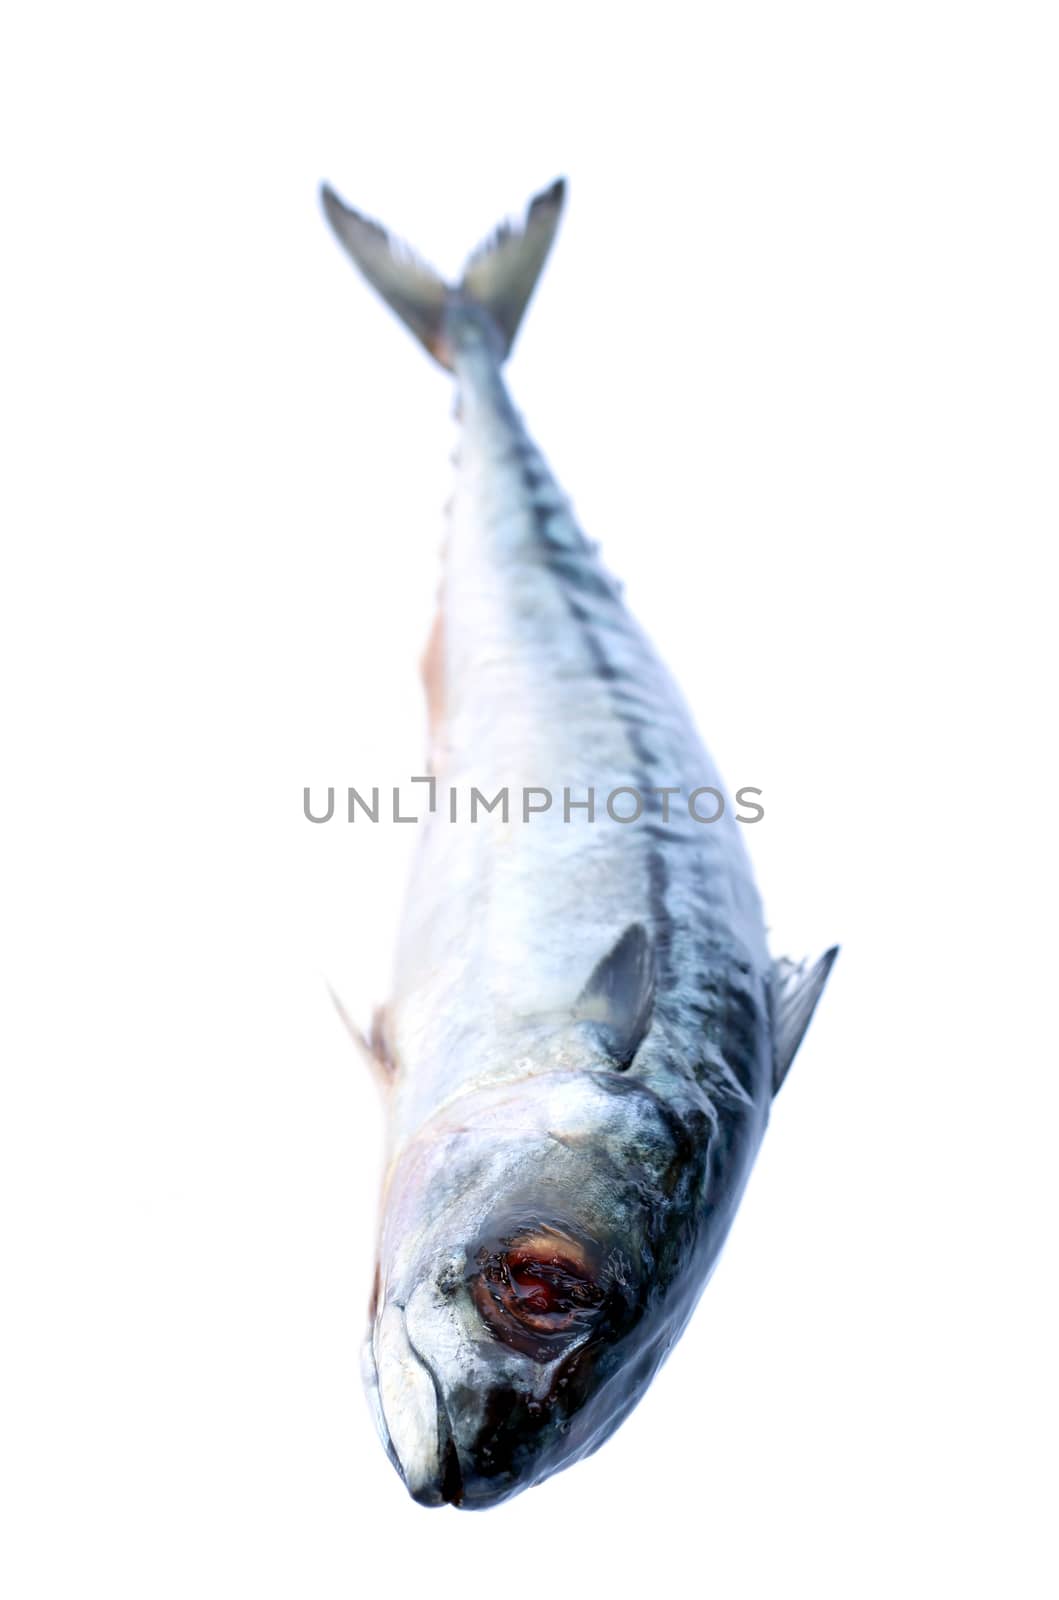 Image of fresh saba fish isolated on white background.